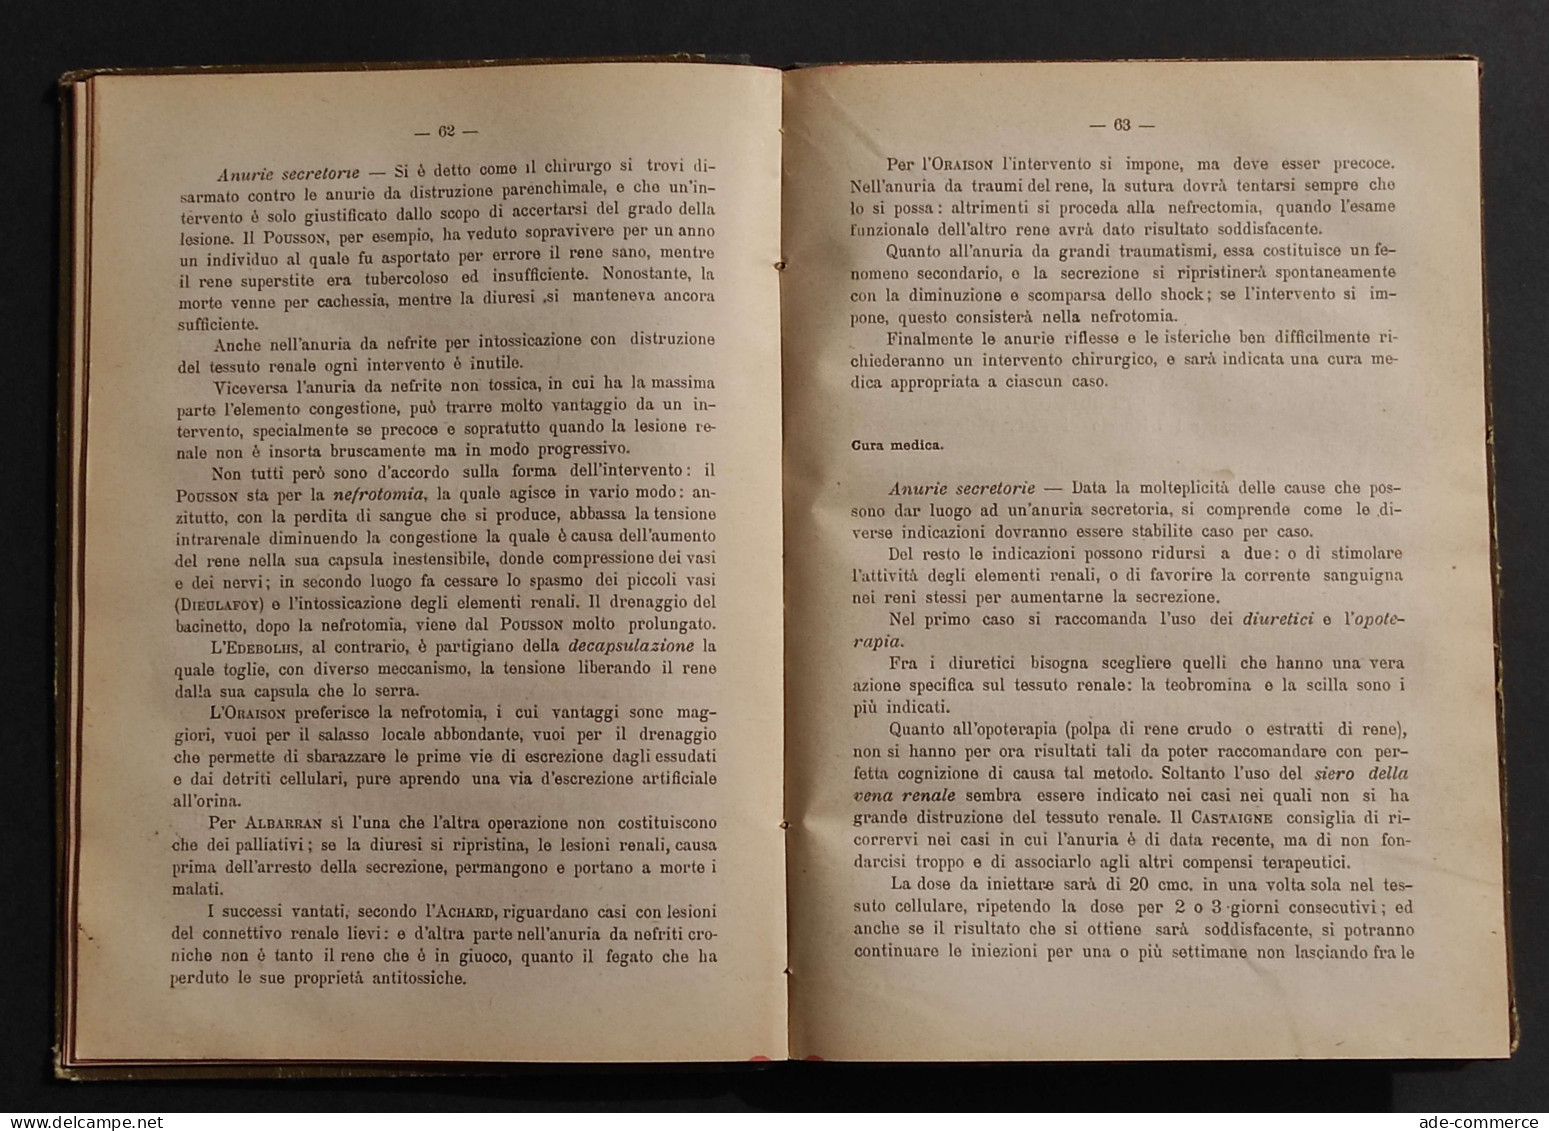 Il Progresso Terapeutico - Annuario Scientifico - A. Gagliardi - 1913 - Medicina, Psicología